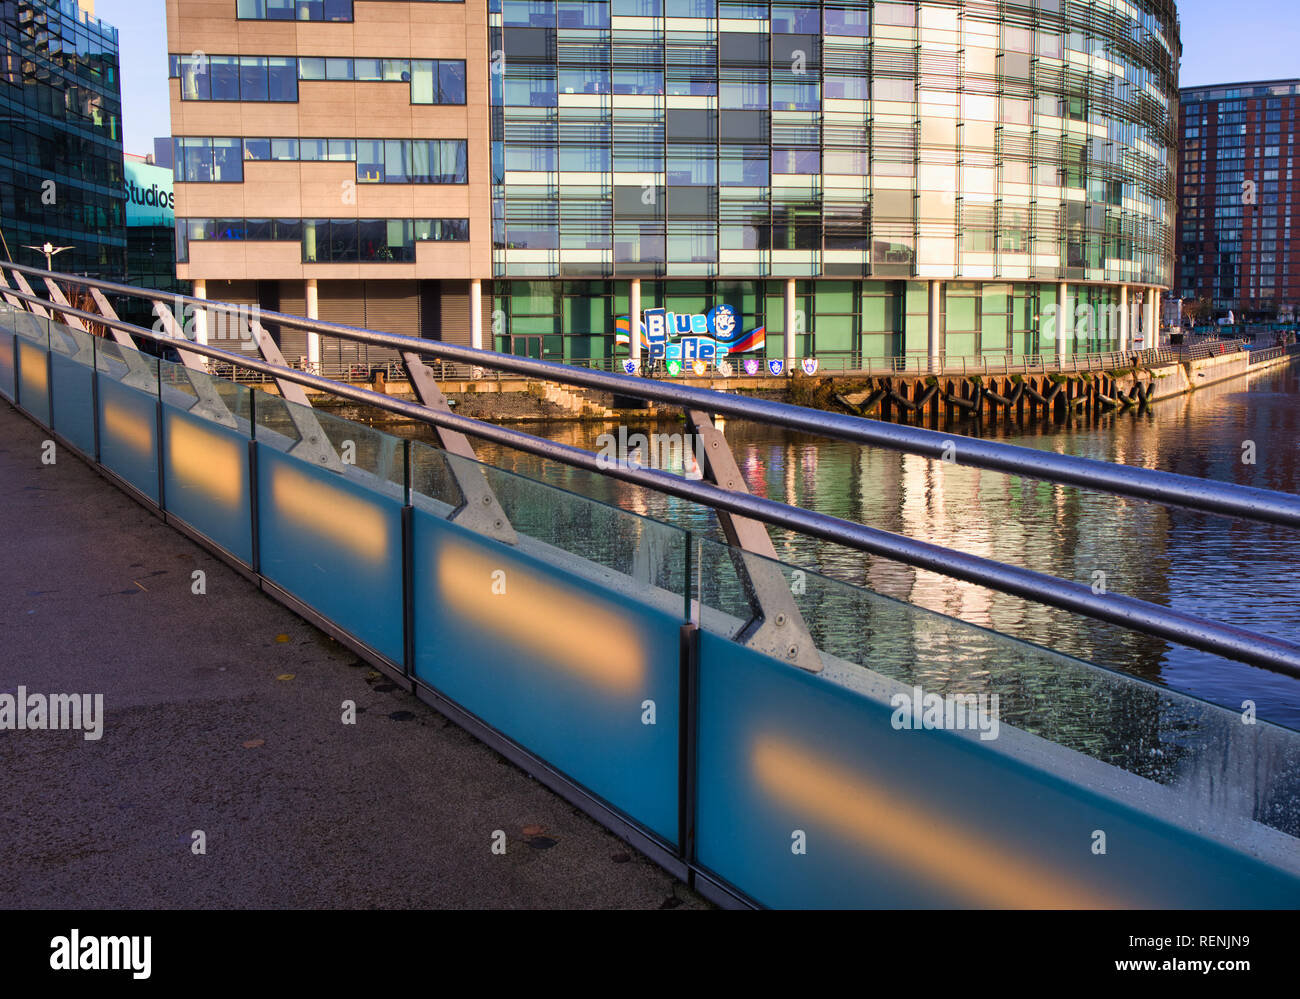 La ciudad de los medios de comunicación a través de la pasarela de Buques del Canal de Manchester y el Bridge House donde Azul Peter es producida, Salford Quays, Greater Manchester, Inglaterra Foto de stock